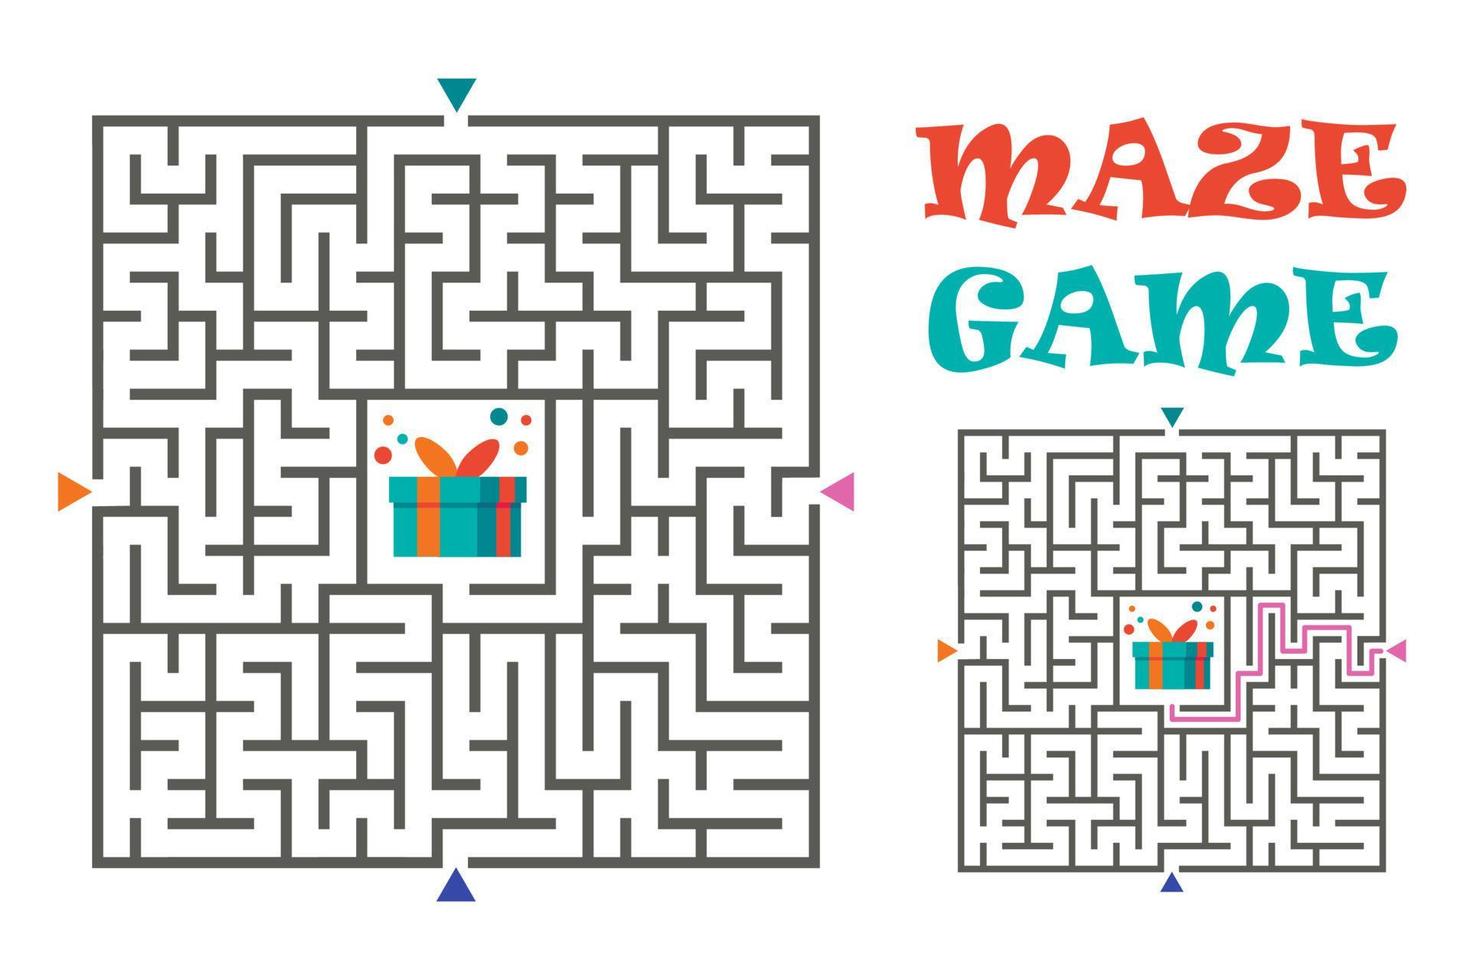 jeu de labyrinthe de labyrinthe carré pour les enfants. énigme logique. quatre entrées et une bonne façon d'aller. illustration vectorielle isolée sur fond blanc. vecteur